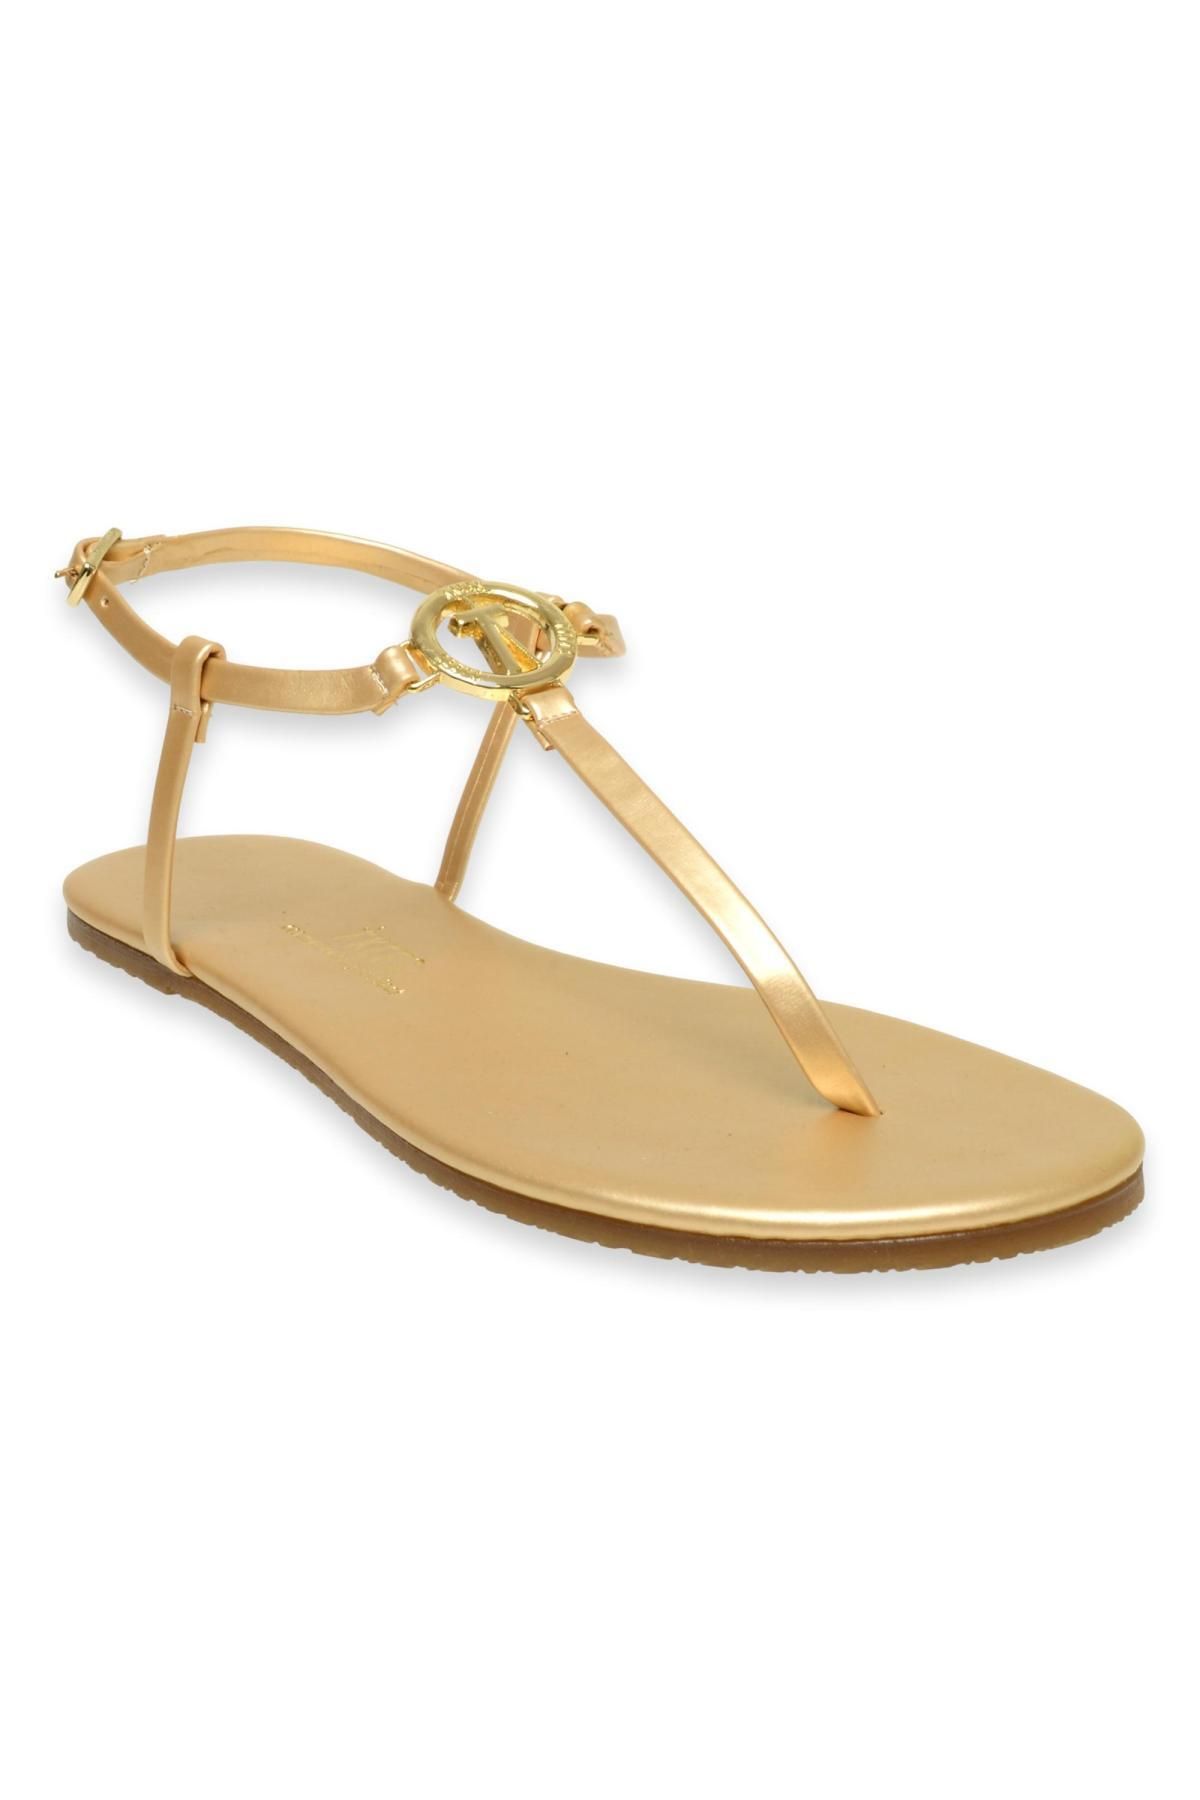 Tkees Tk-8021 Tokali Altın Kadın Sandalet